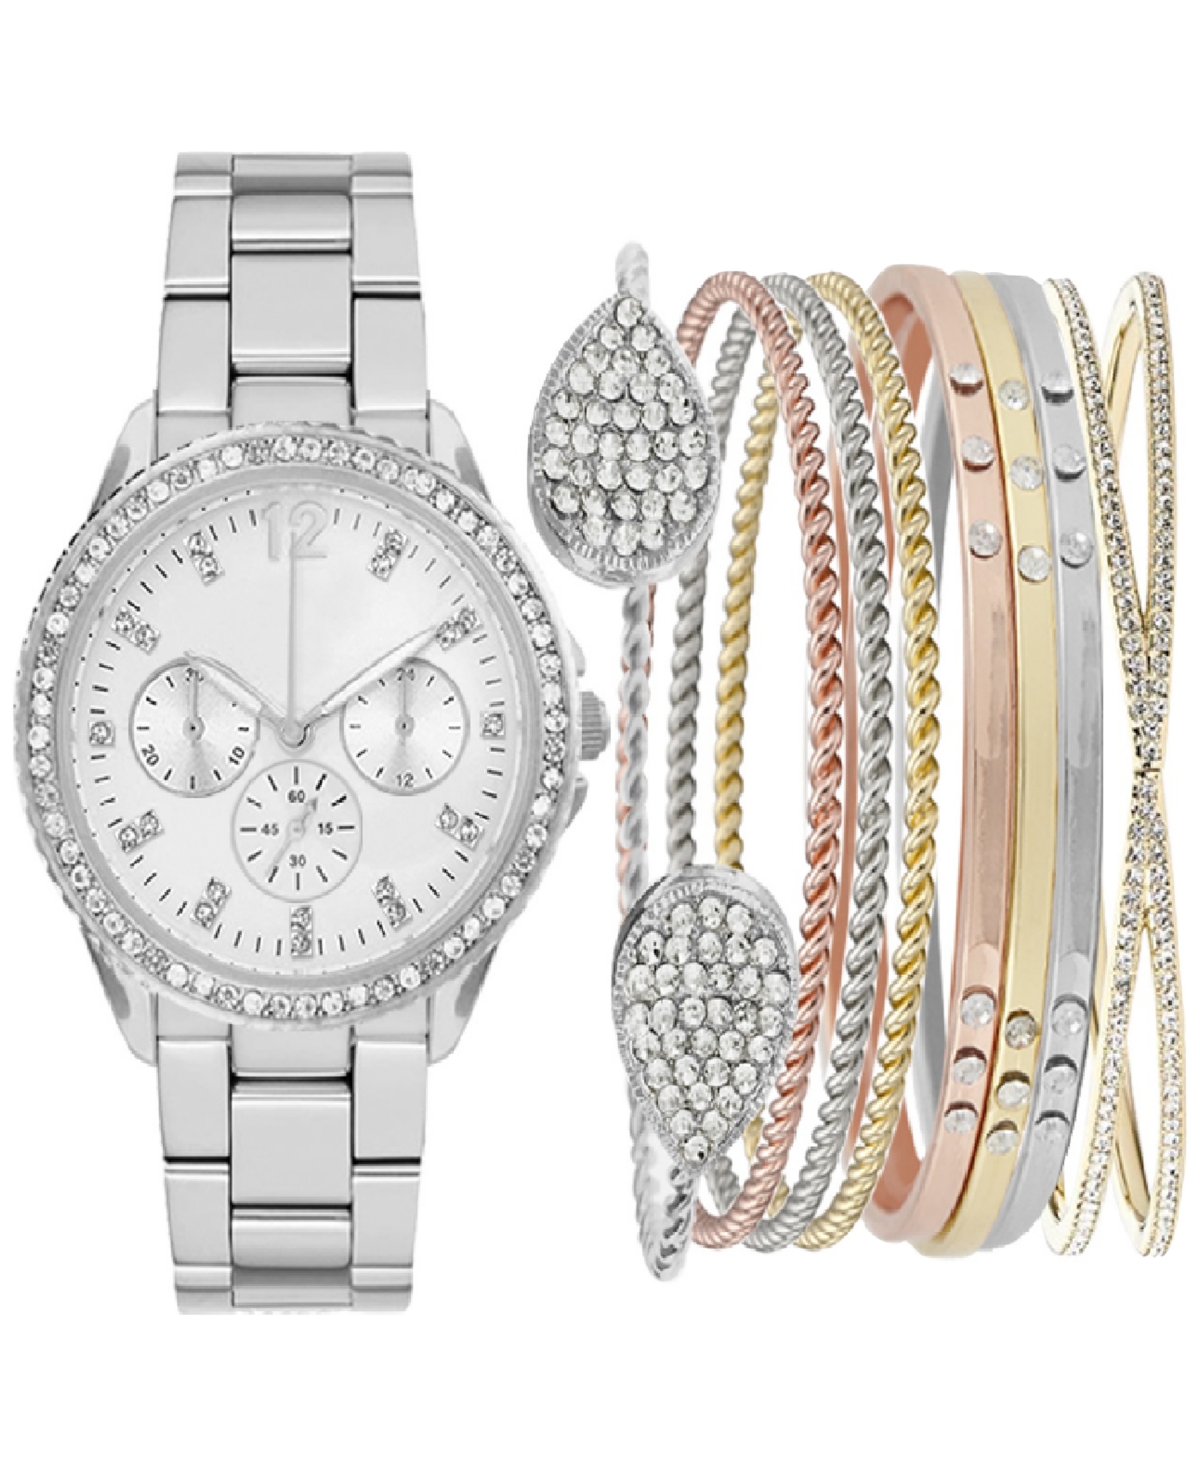 Women's Bracelet Watch 34mm Gift Set - Silver